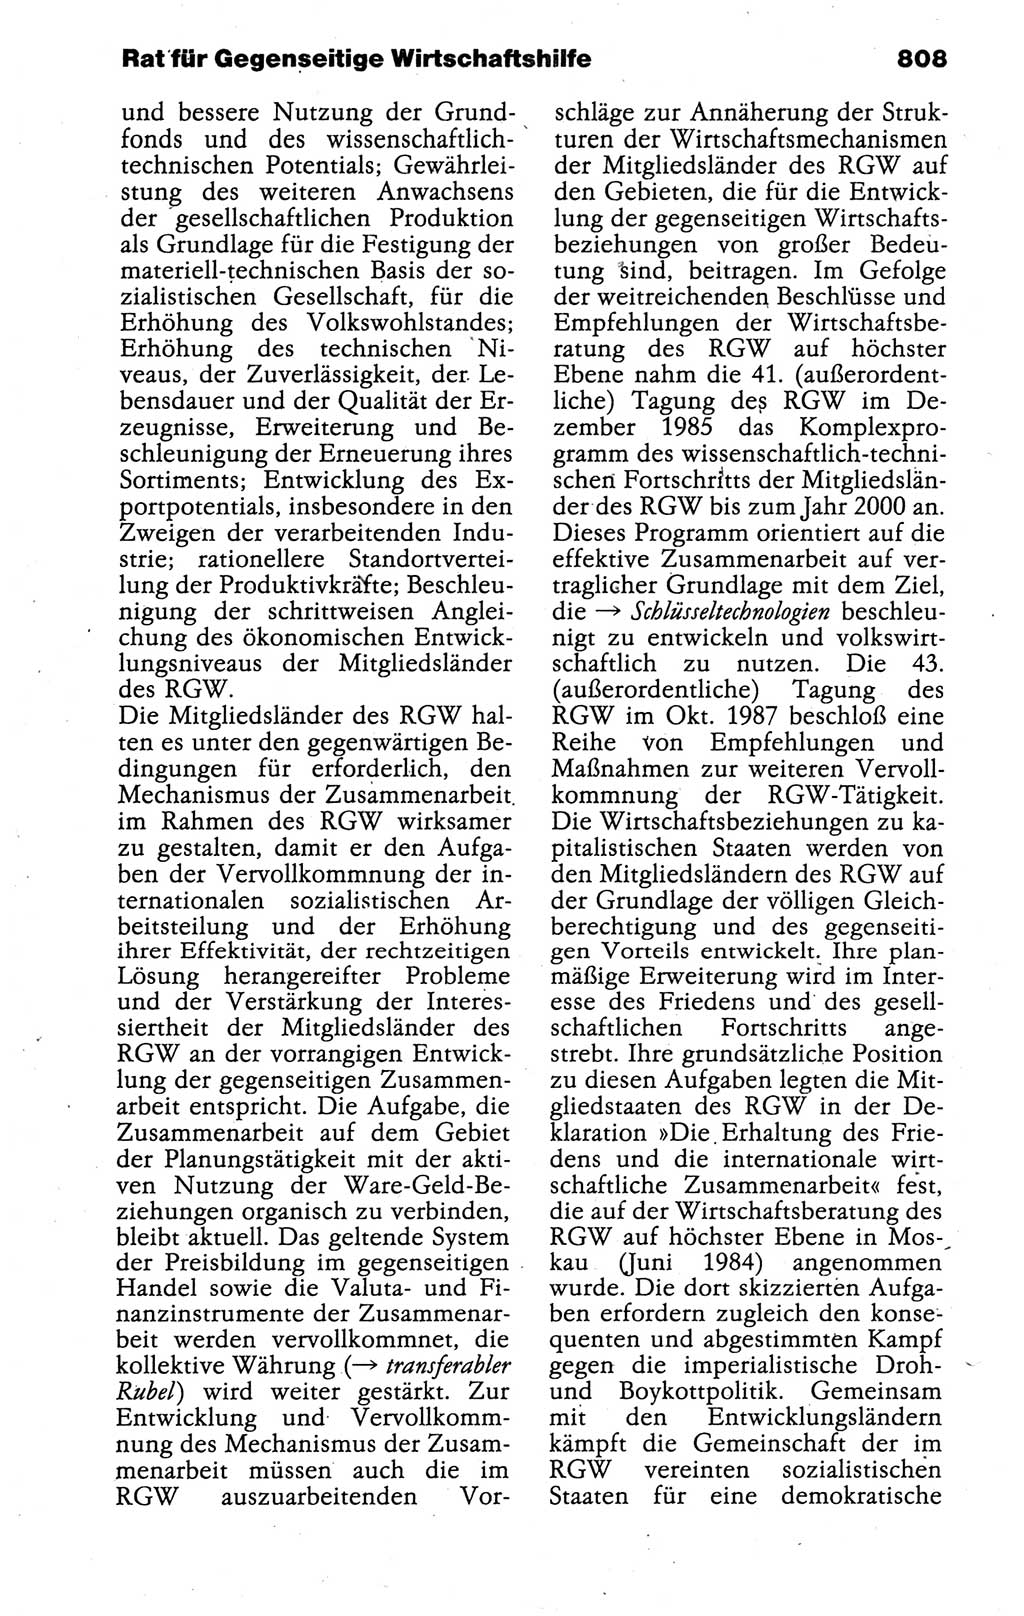 Kleines politisches Wörterbuch [Deutsche Demokratische Republik (DDR)] 1988, Seite 808 (Kl. pol. Wb. DDR 1988, S. 808)